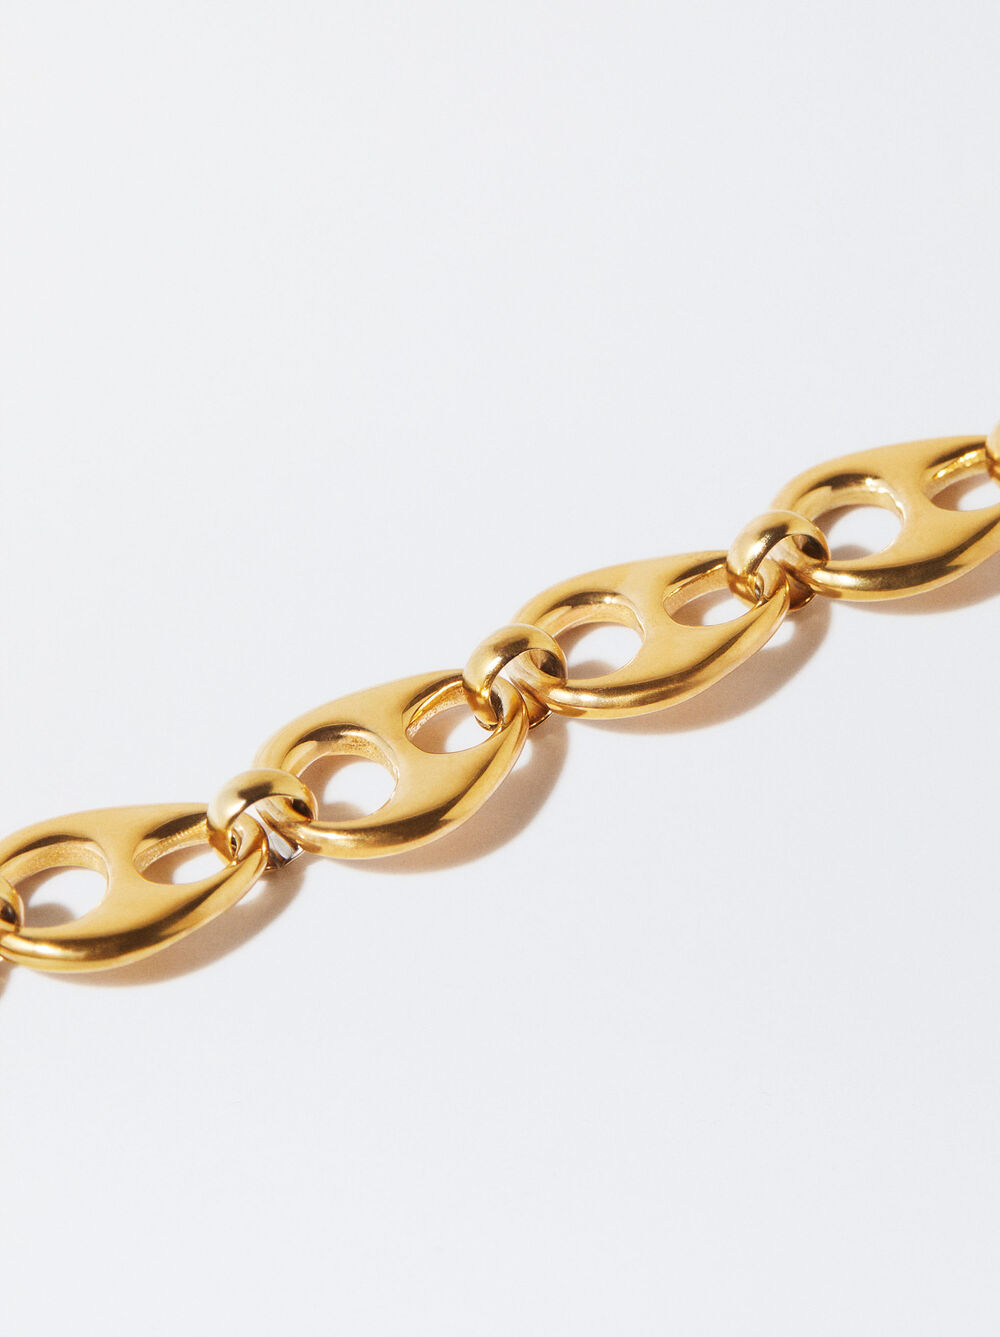 Stainless Steel Golden Bracelet